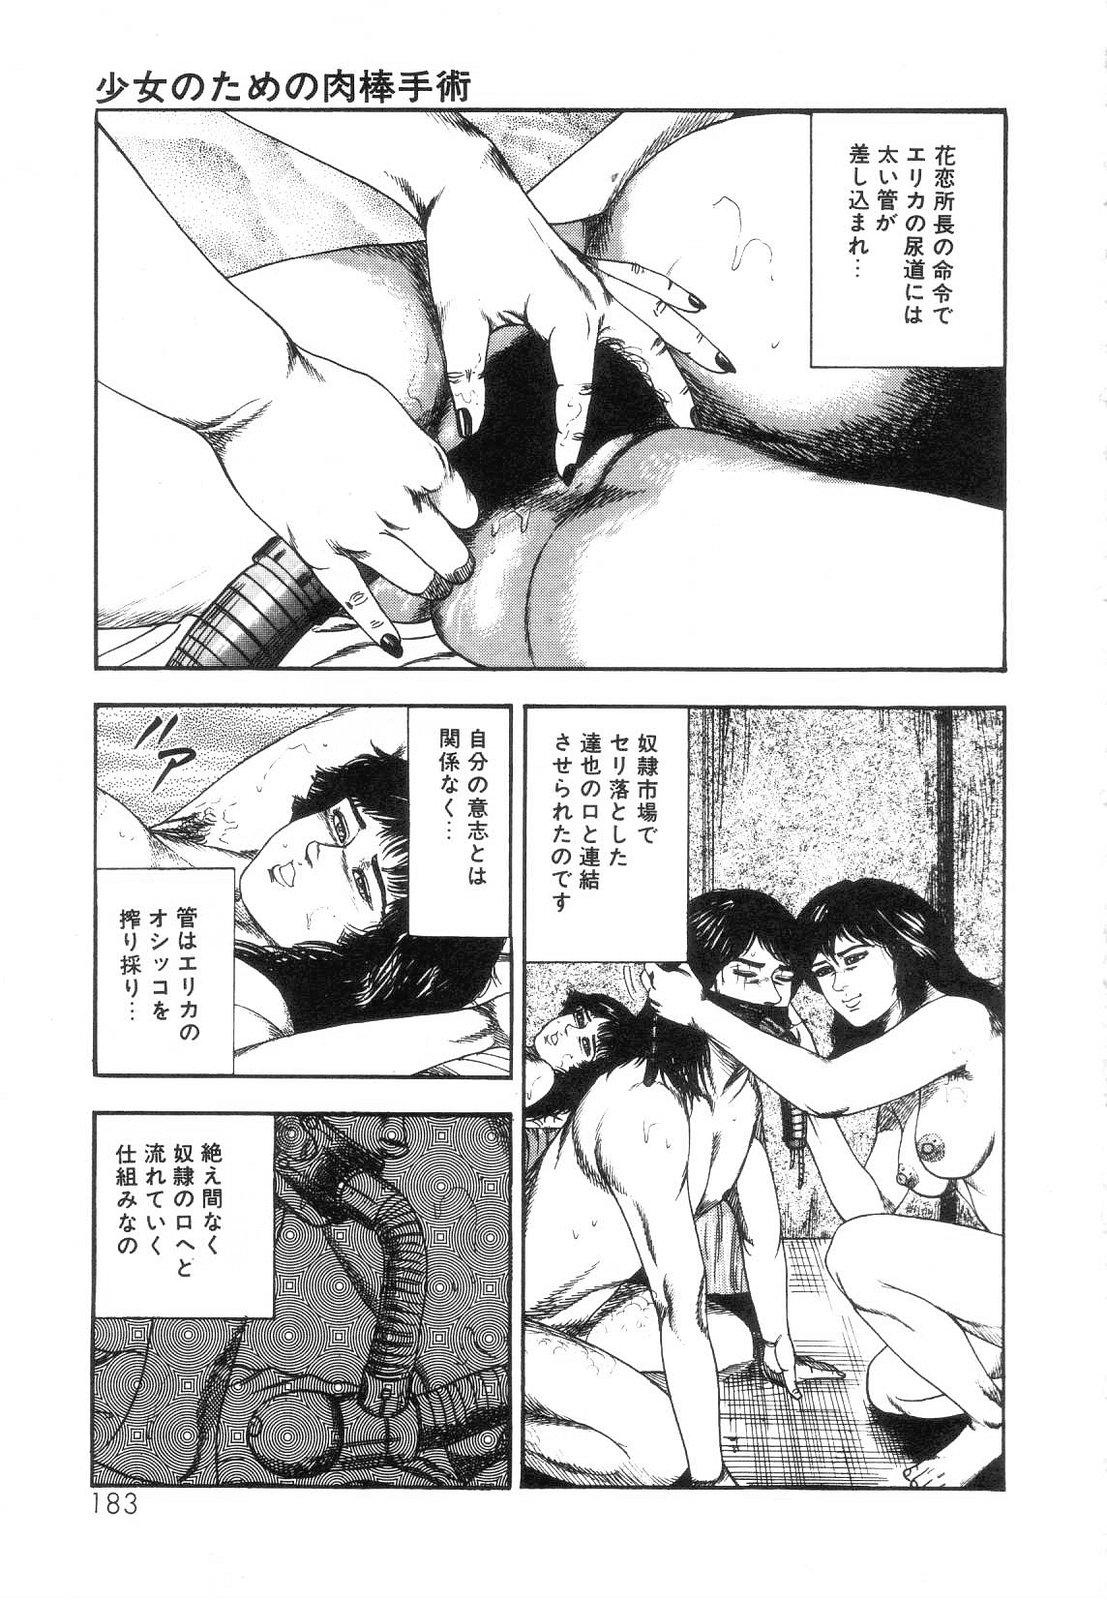 Shiro no Mokushiroku Vol. 5 - Ninshoujo Erika no Shou 184